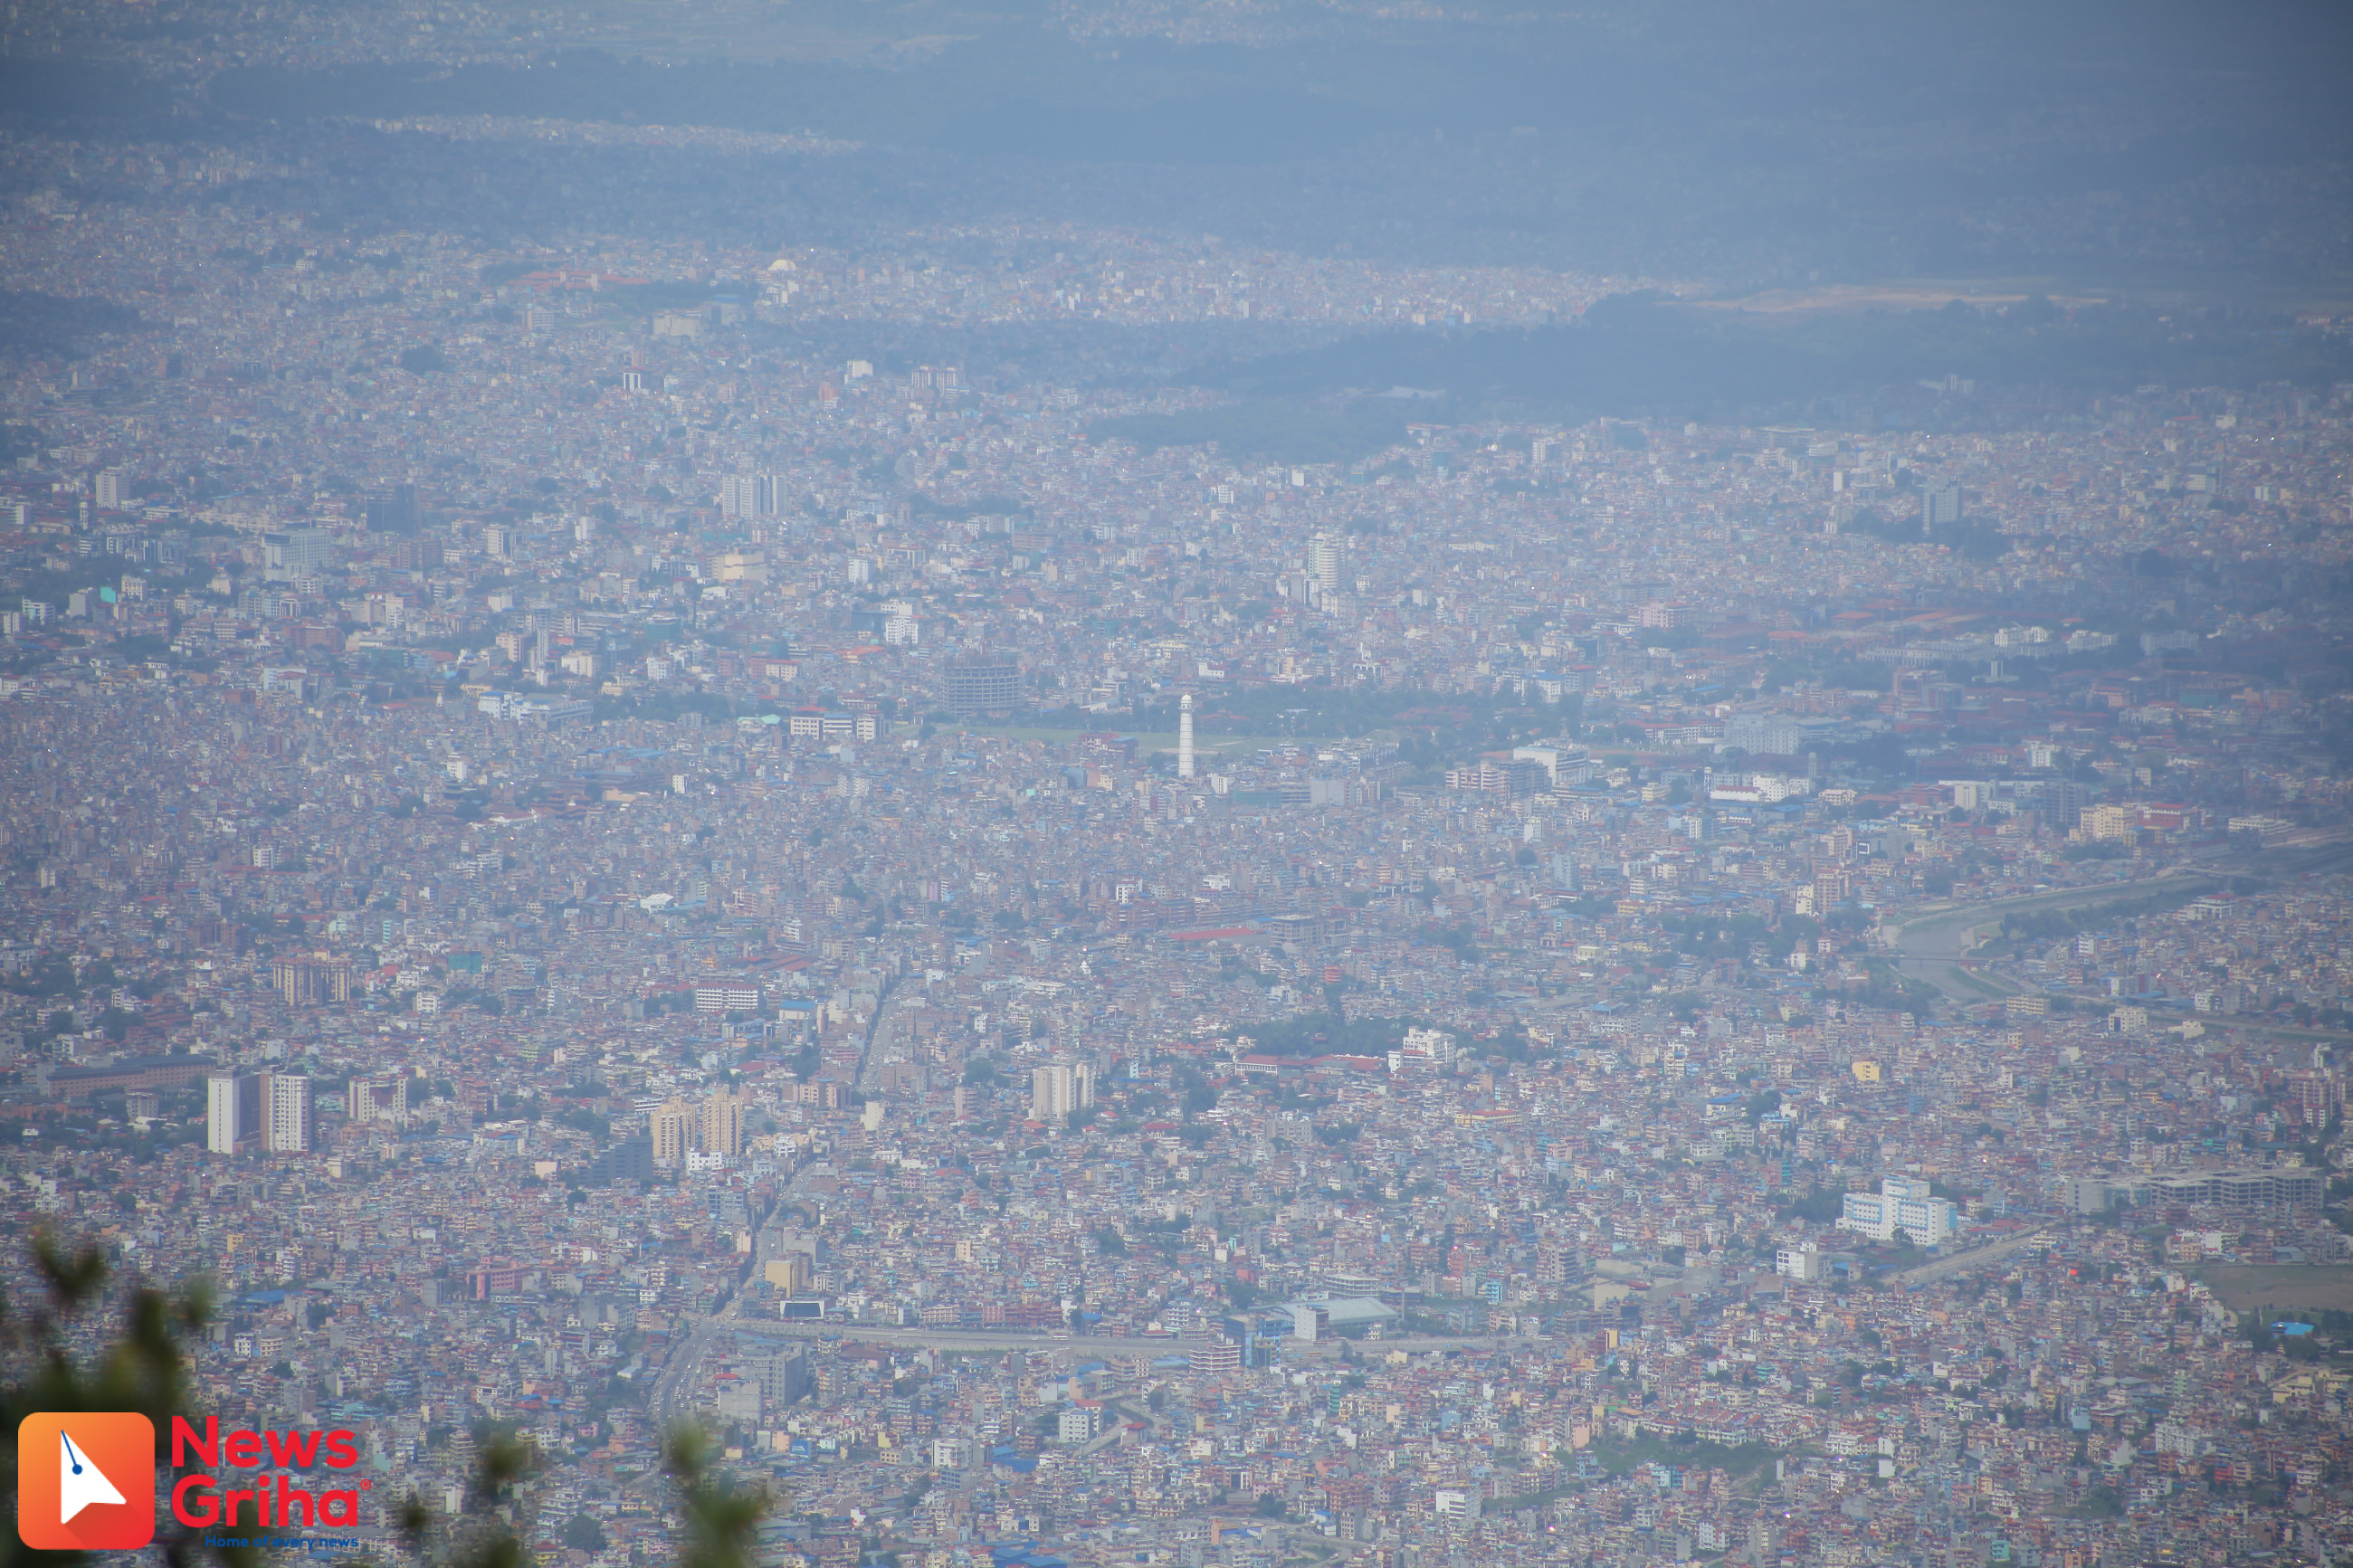 काठमाडौंको वायु अझै अस्वस्थ, अहिले पनि विश्वको तेस्रो बढी प्रदूषित शहर